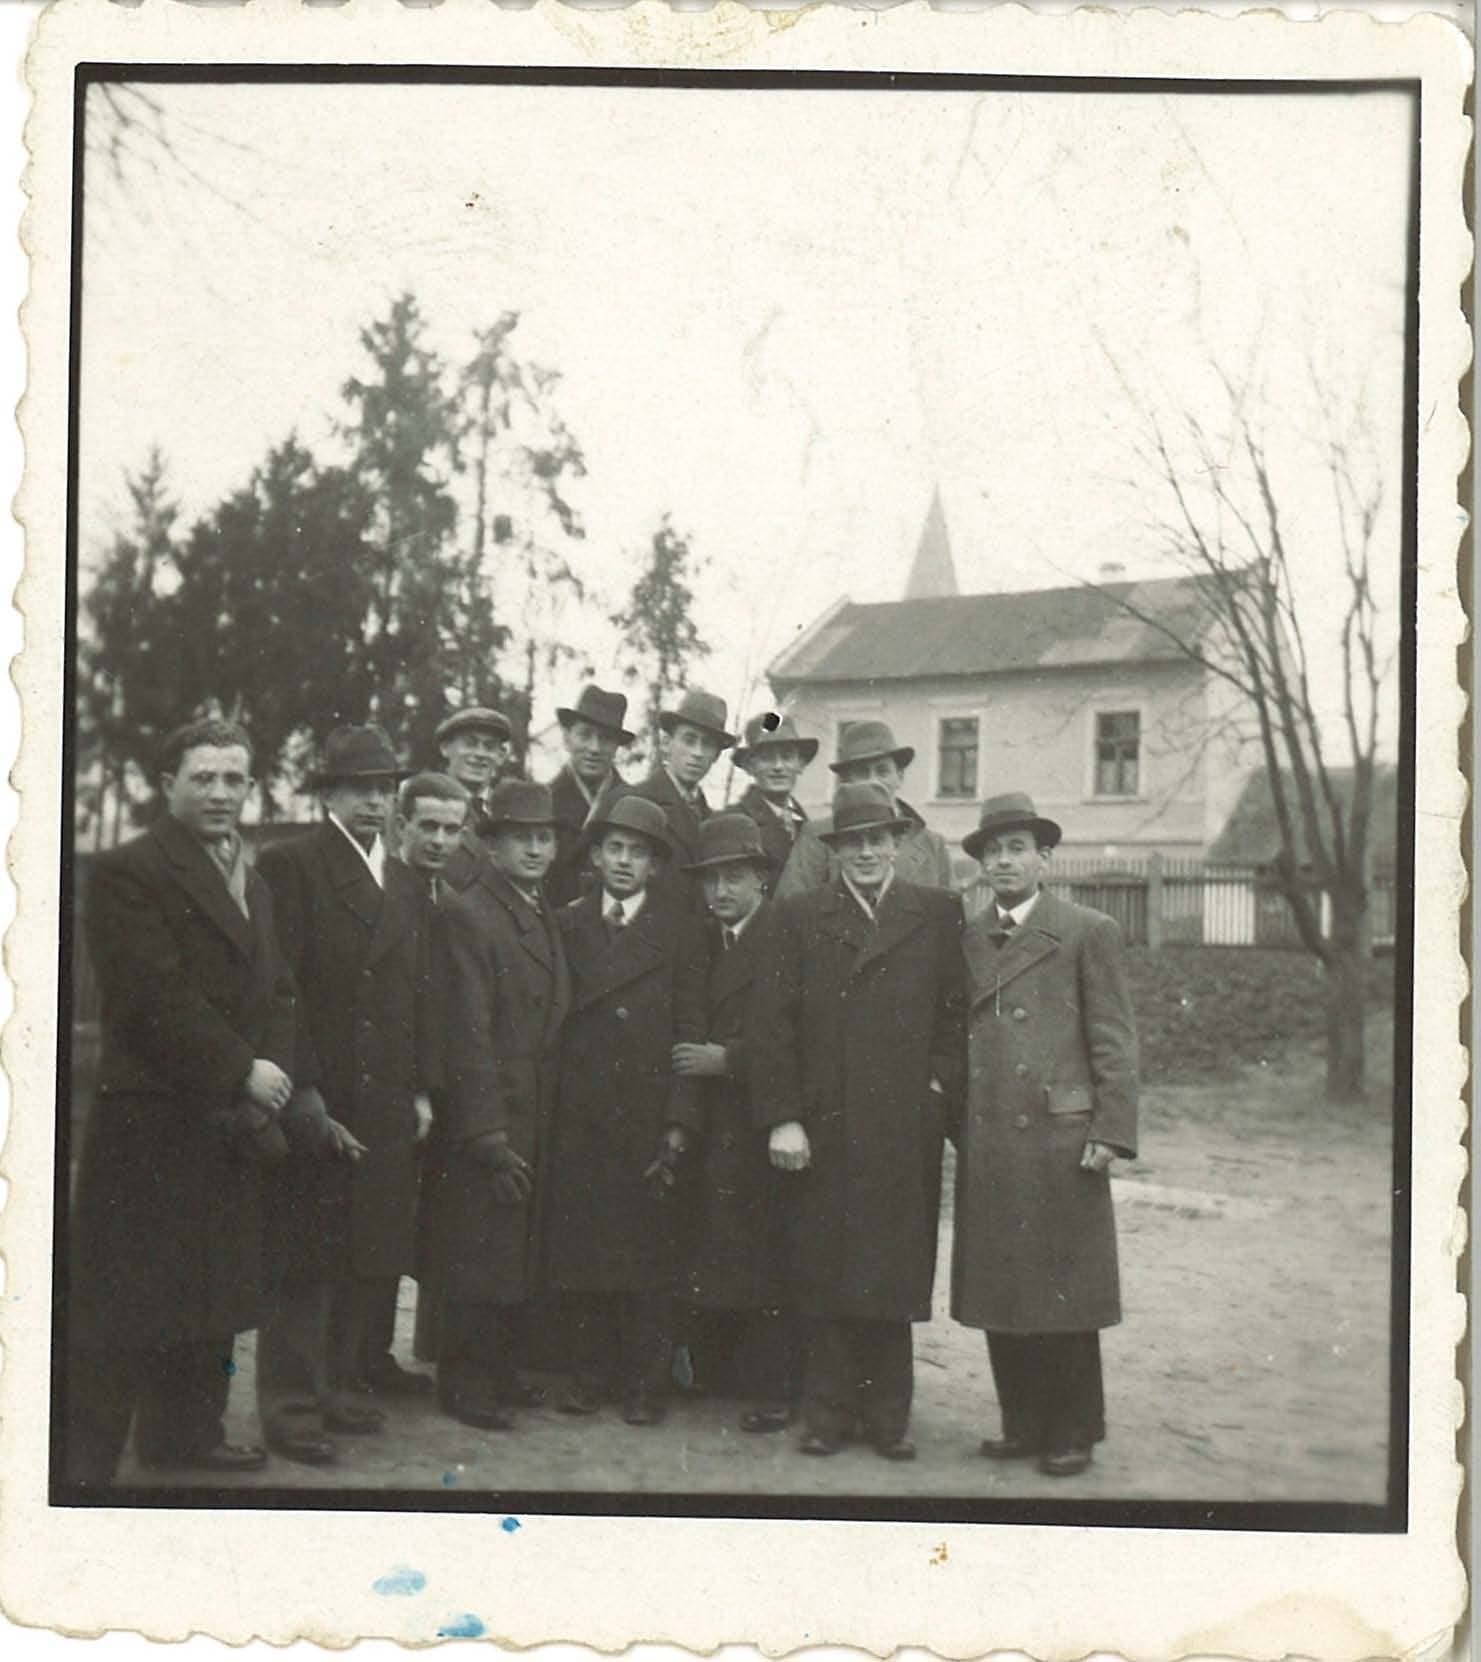 On back: 1934, Bardejov, Fudem